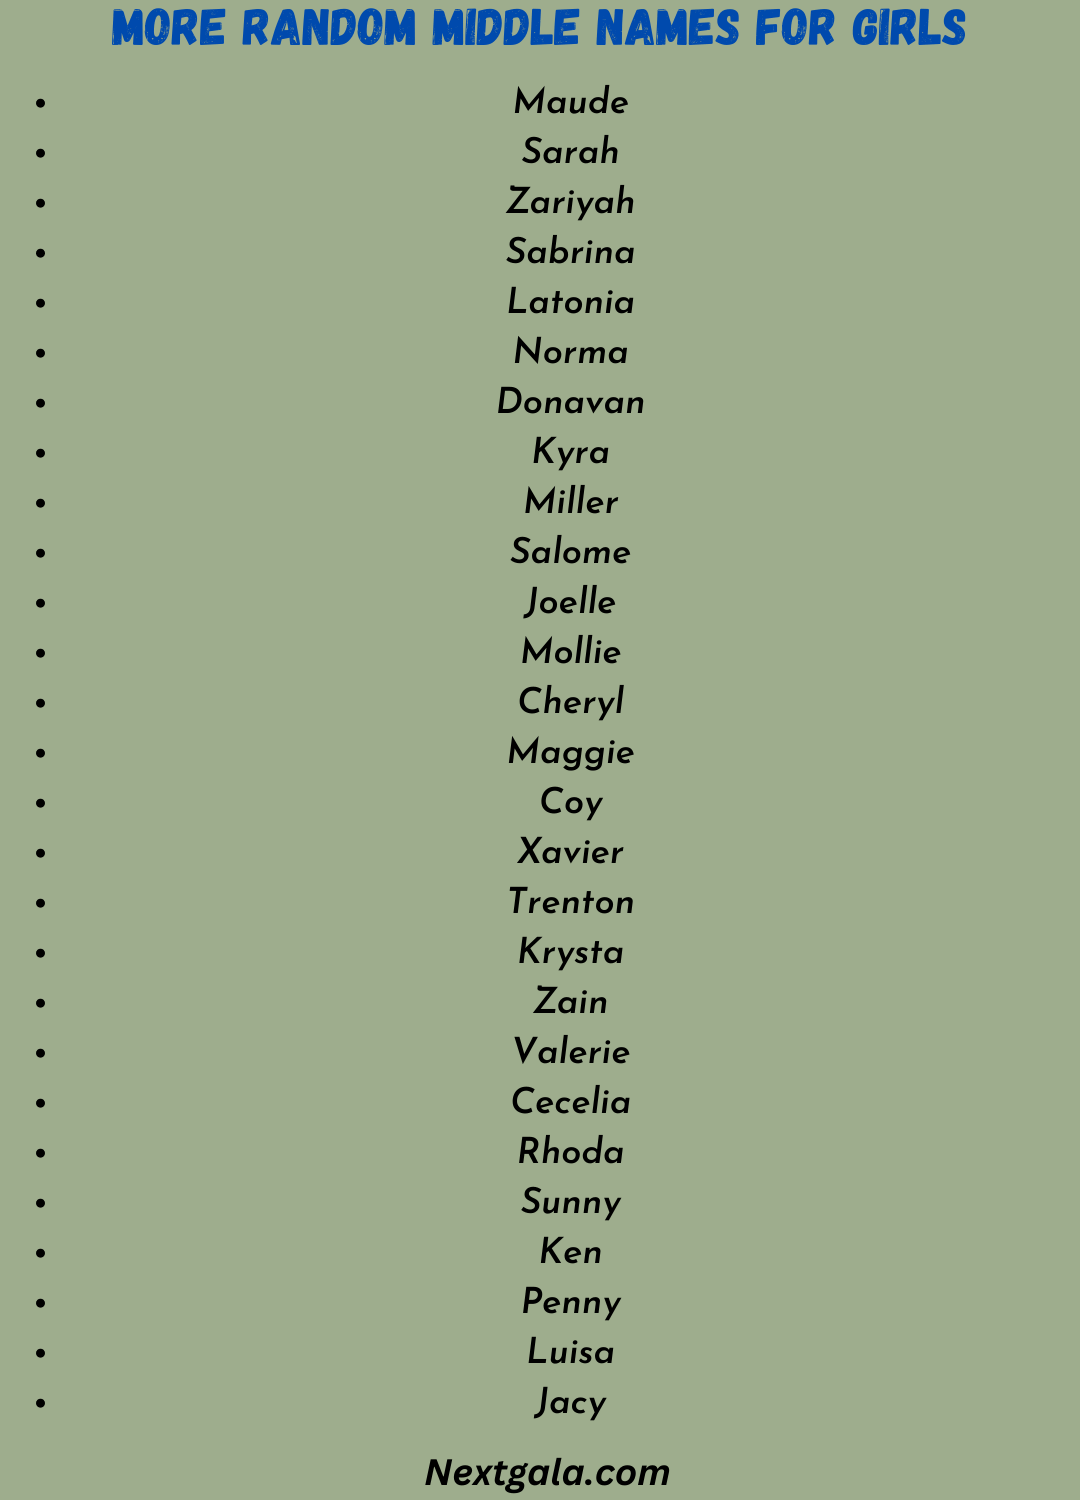 Random Middle Names for Girls